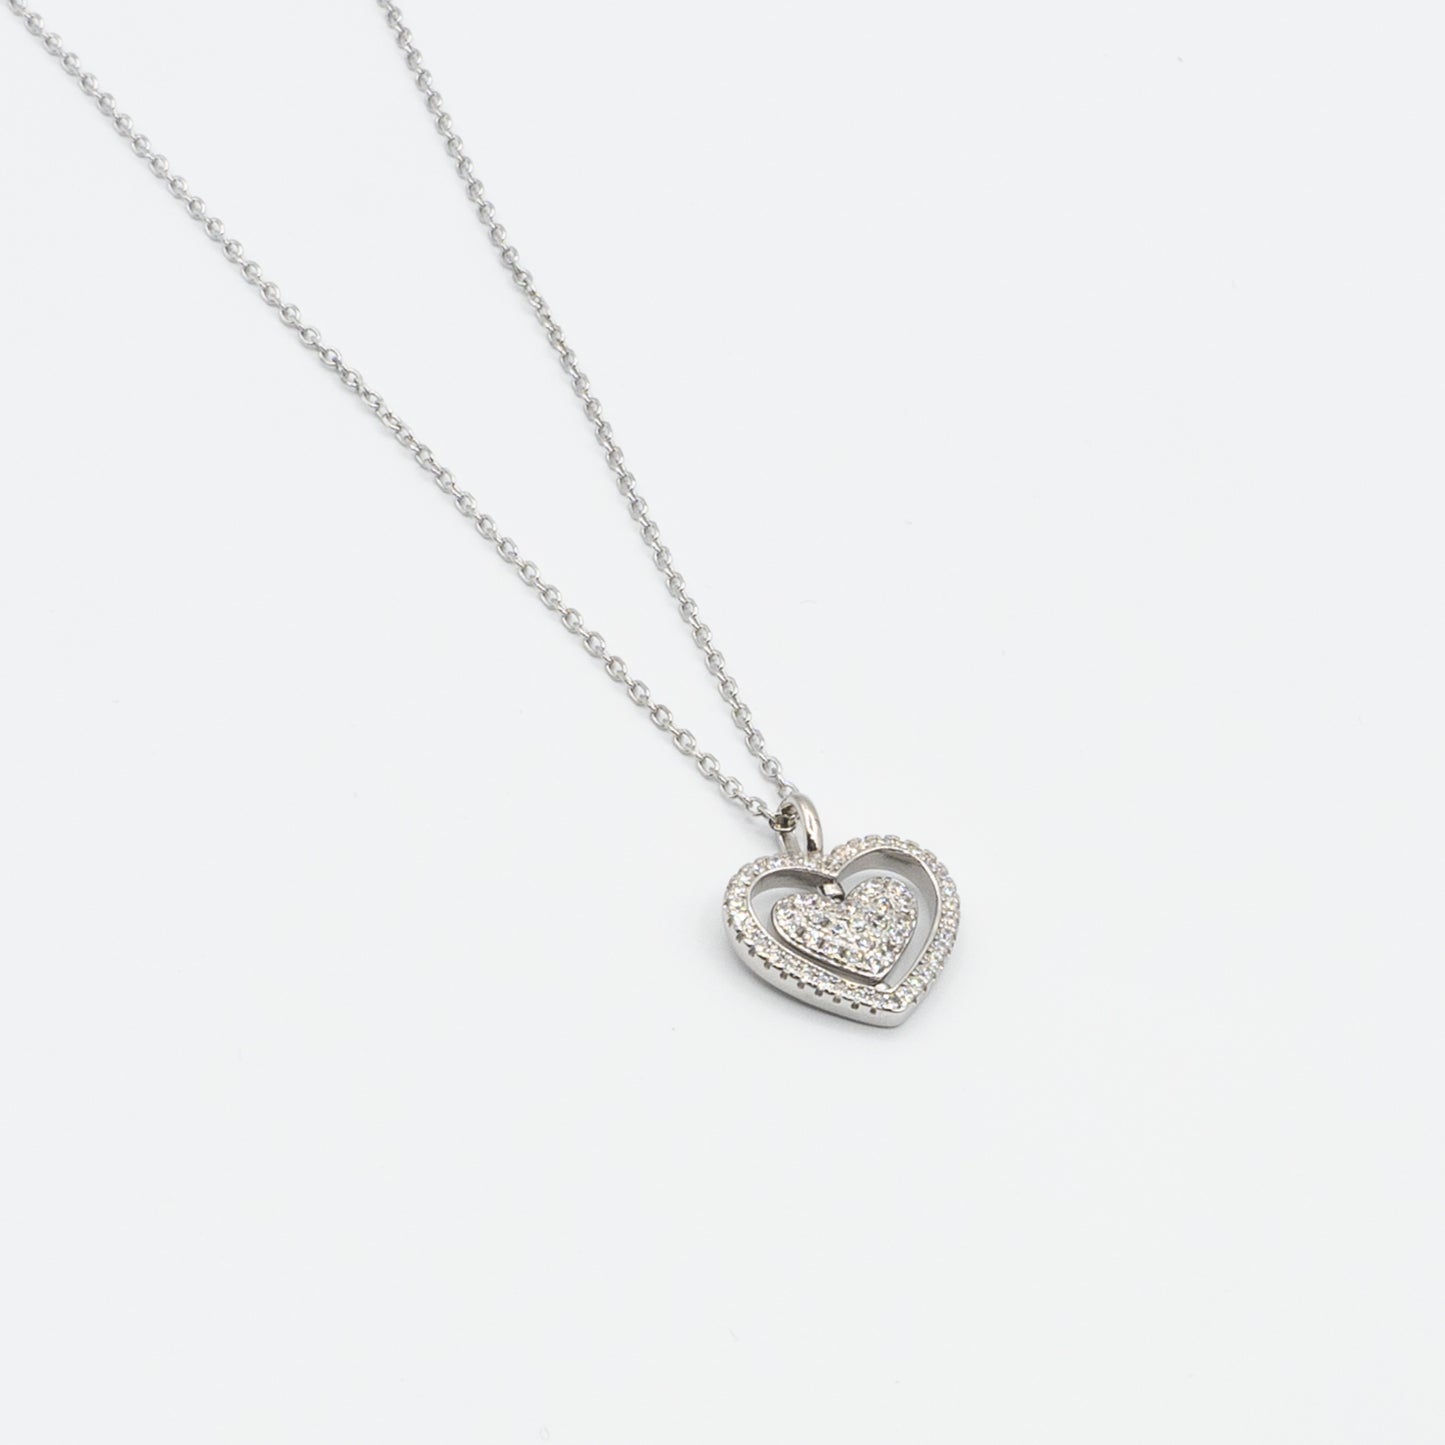 JENNIFER sterling silver heart necklace